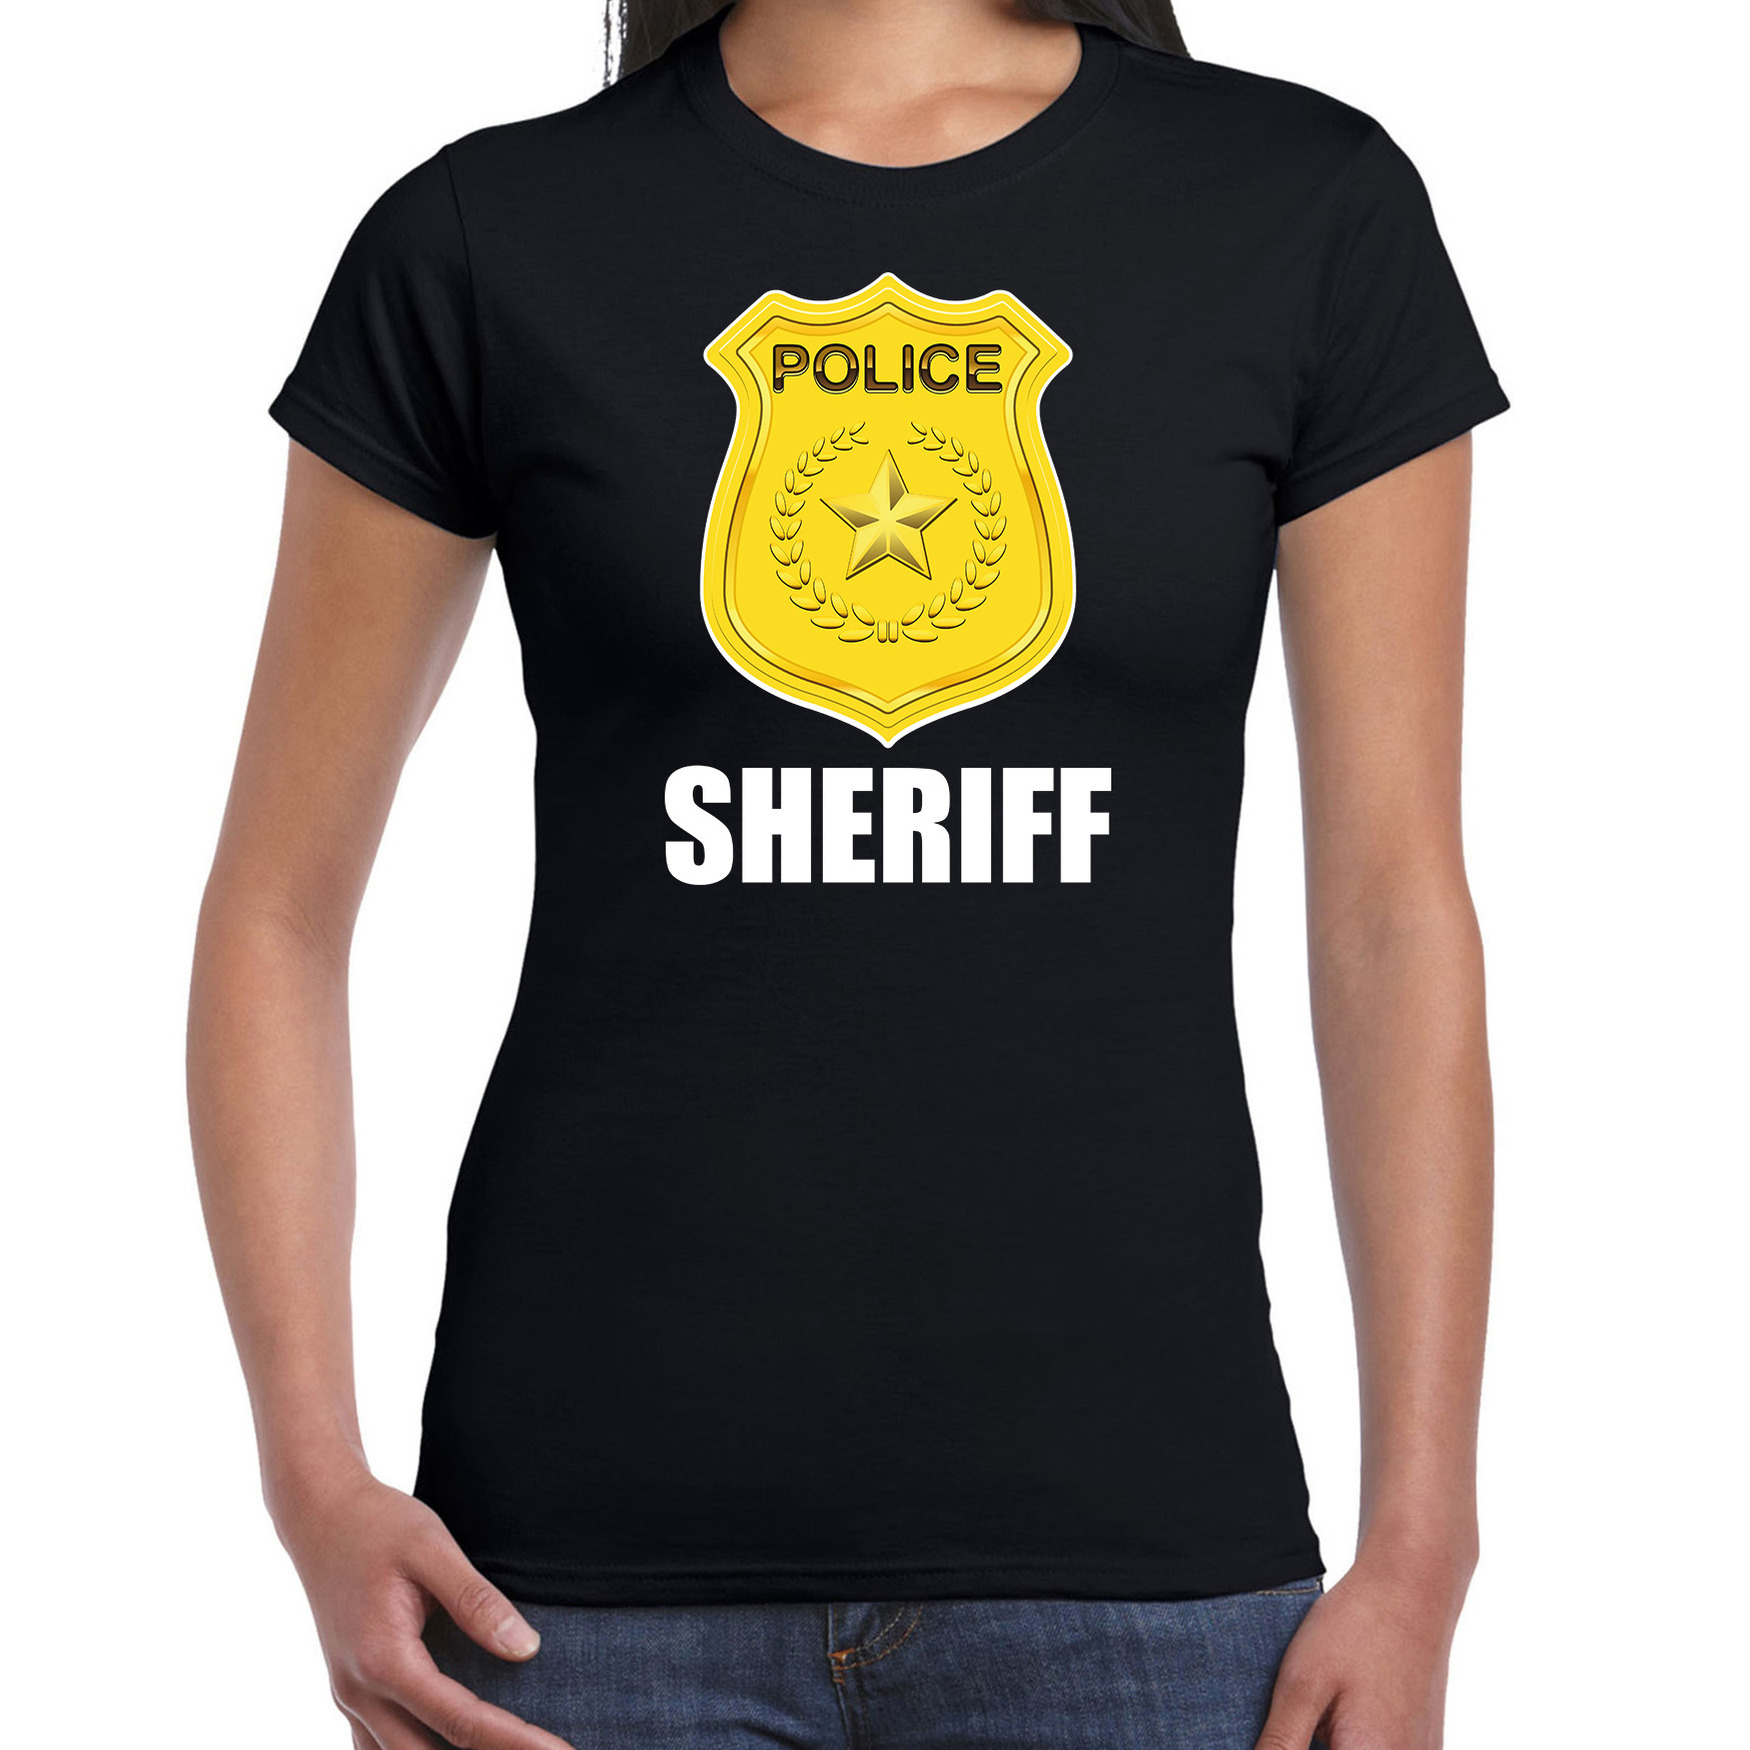 Sheriff police-politie embleem t-shirt zwart voor dames